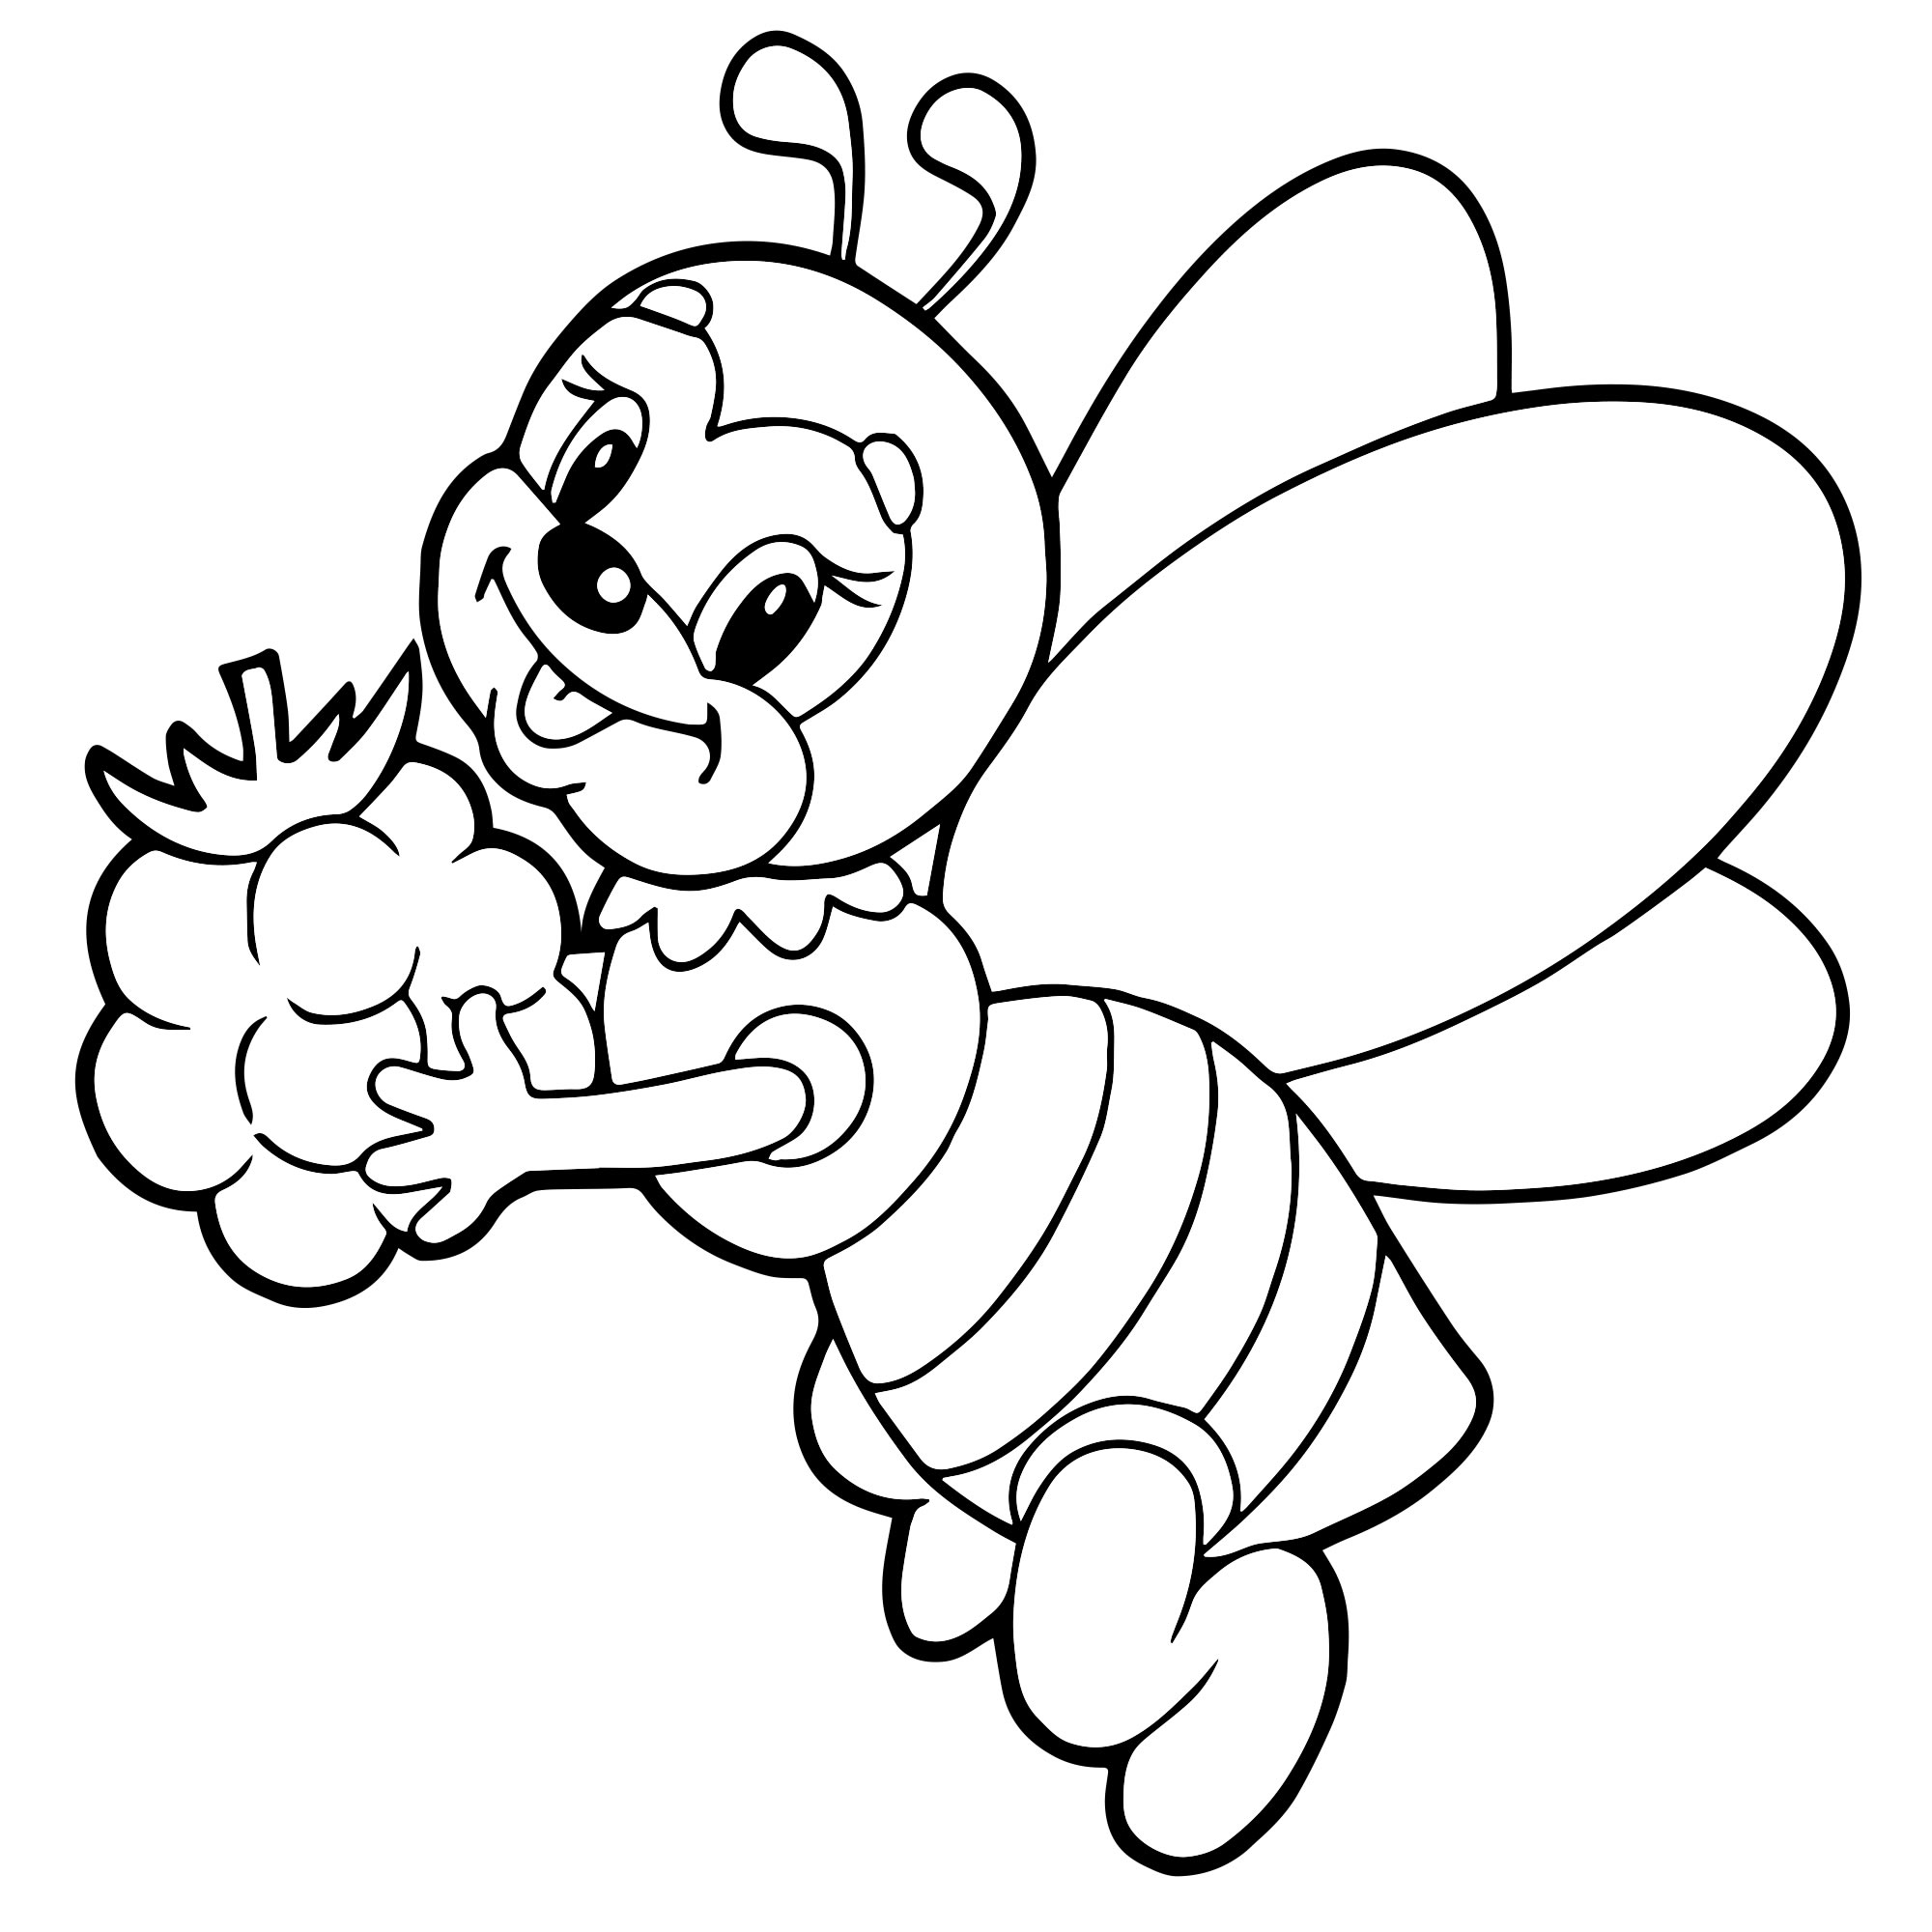 Пчелка раскраска распечатать. Пчела раскраска. Пчела раскраска для детей. Пчелка раскраска для малышей. Раскраска пчёлка для детей.